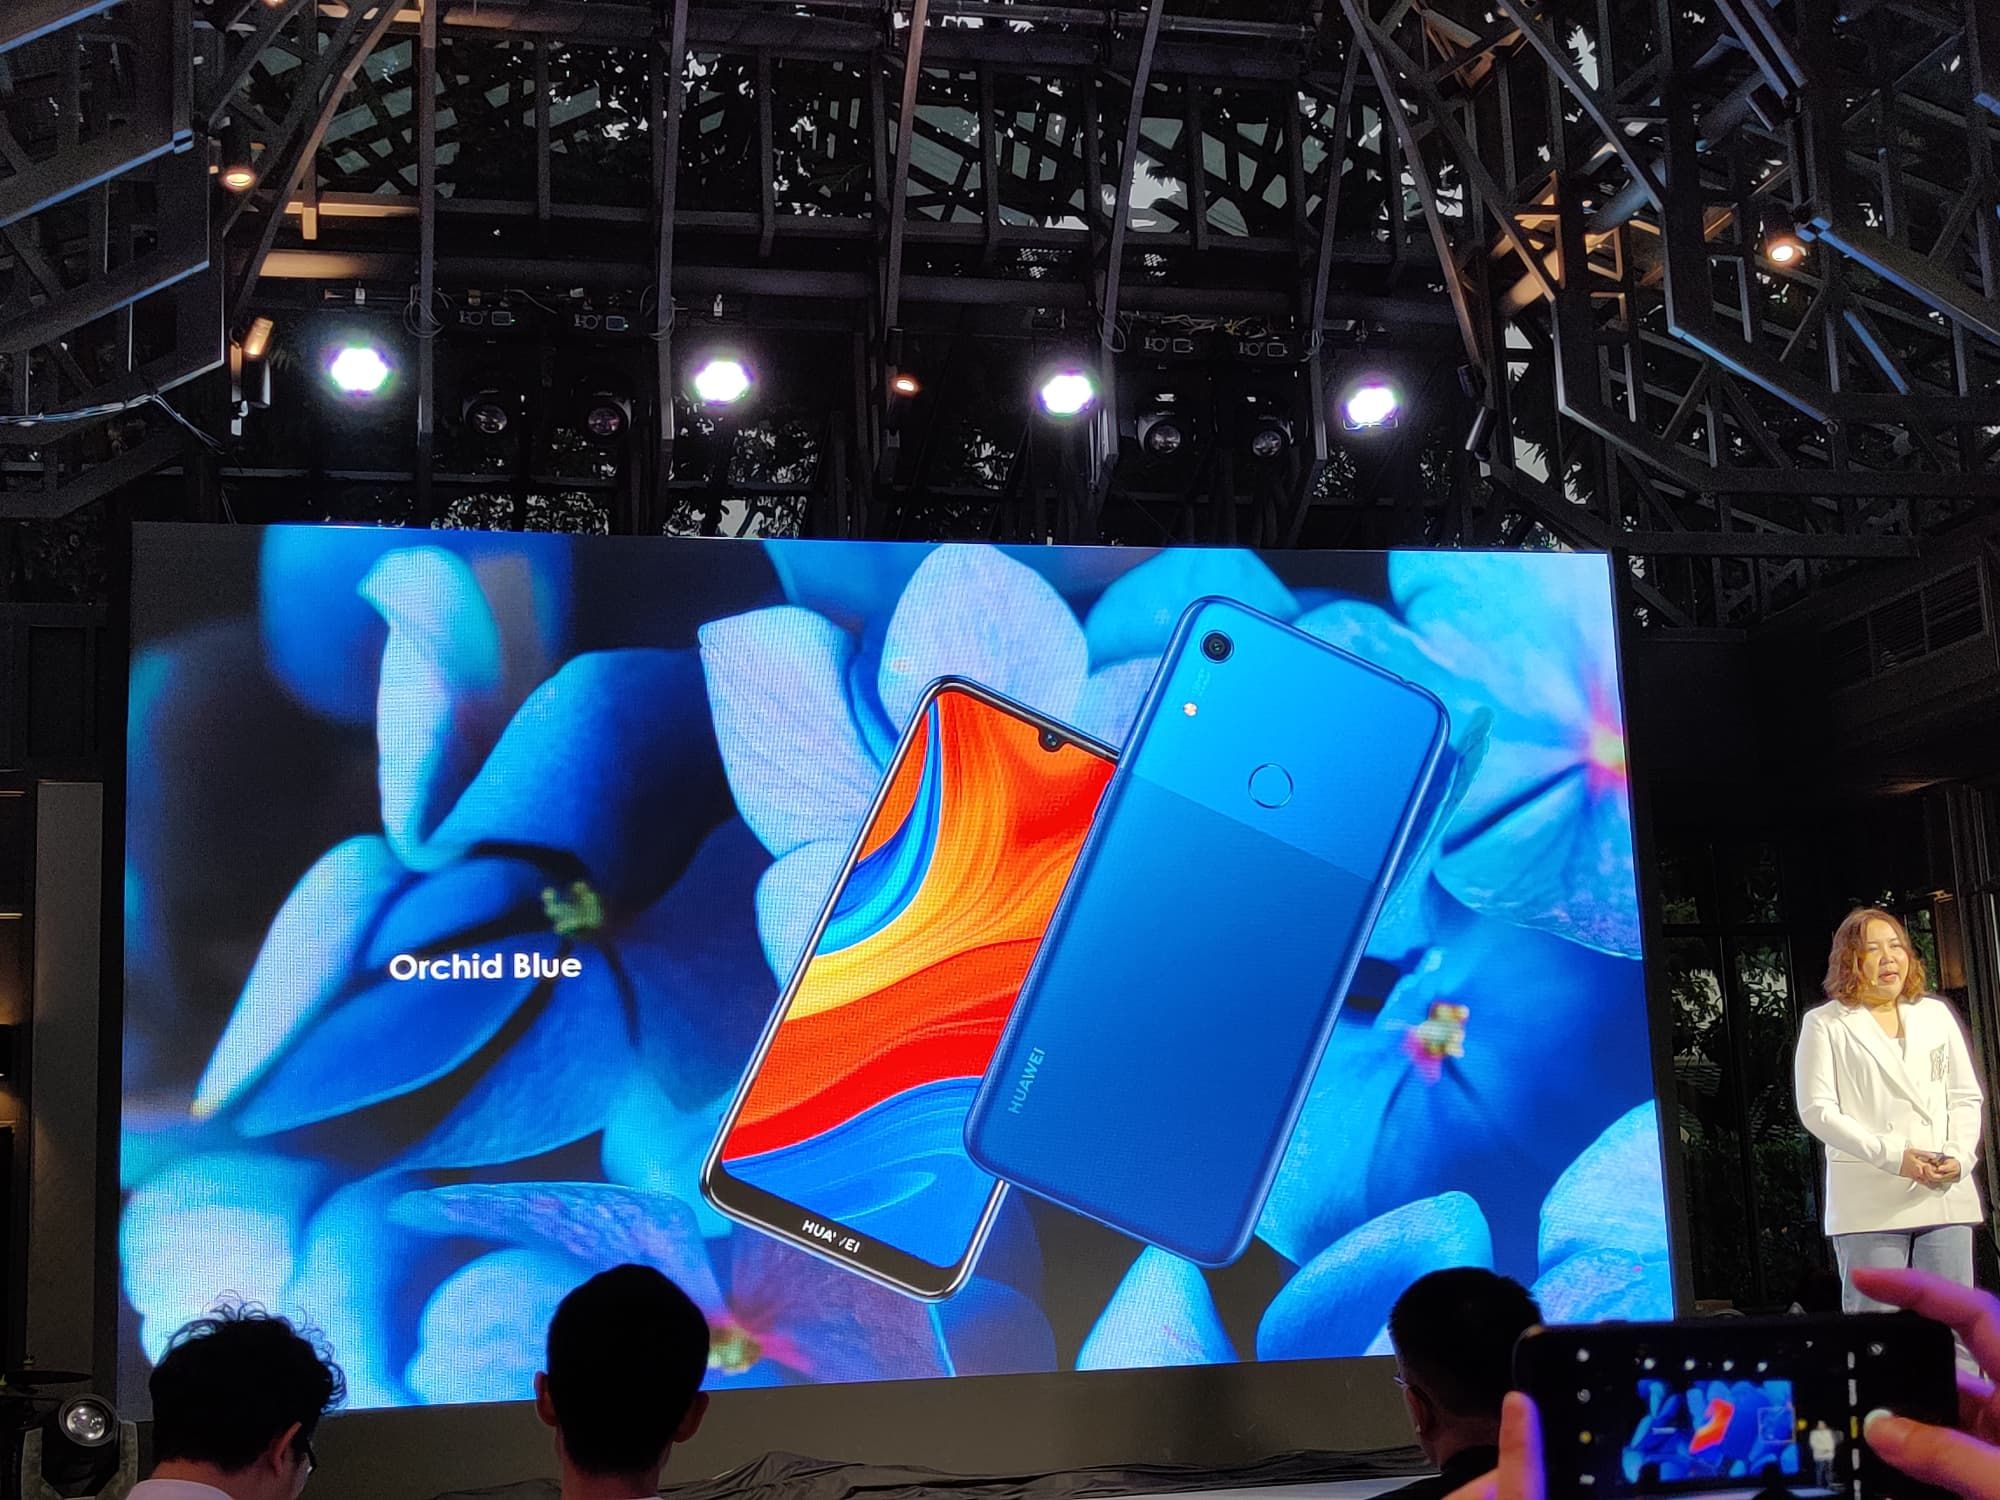 เปิดตัว Huawei Y9s และ Y6s อัพสเปค อัพกล้อง มี Google Play เคาะราคาเริ่มต้น 3,999 บาท